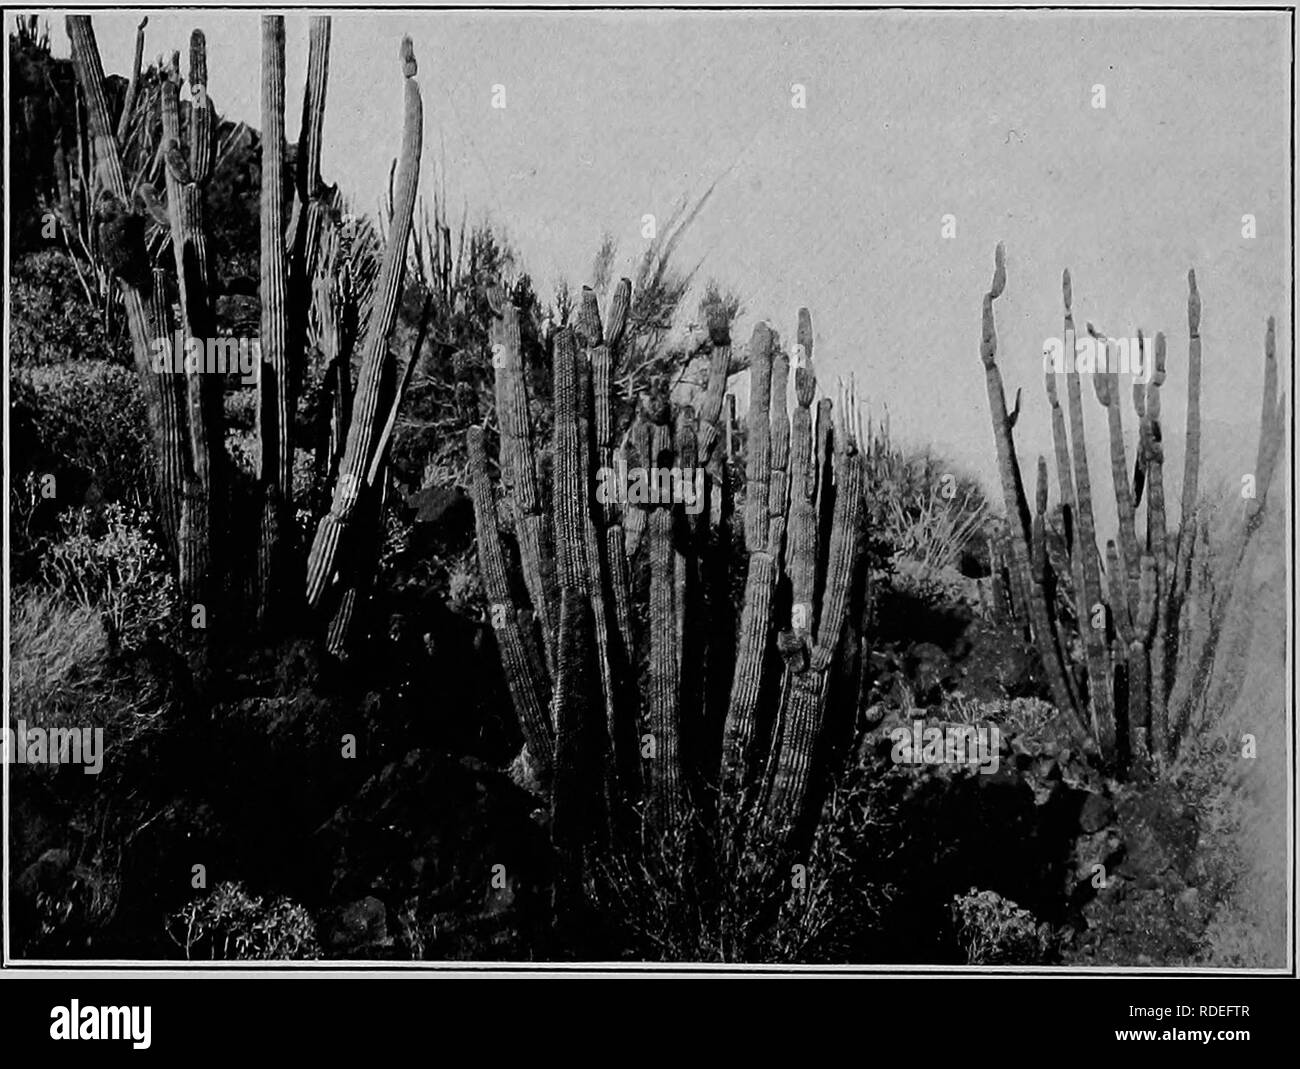 . Säugetiere von der mexikanischen Grenze der Vereinigten Staaten: Ein beschreibender Katalog der Arten von Säugetieren in dieser Region vorkommenden; mit einer allgemeinen Zusammenfassung der Naturgeschichte, und eine Liste der Bäume. Säugetiere; Säugetiere; Bäume; Bäume; Naturgeschichte; Natural History. 1. Cereus giganteus (siehe Seite 65). 2. Cereus thurberi (siehe Seite 66).. Bitte beachten Sie, dass diese Bilder sind von der gescannten Seite Bilder, die digital für die Lesbarkeit verbessert haben mögen - Färbung und Aussehen dieser Abbildungen können nicht perfekt dem Original ähneln. extrahiert. Mearns, Edgar Alexander, 1856-1916. Washi Stockfoto